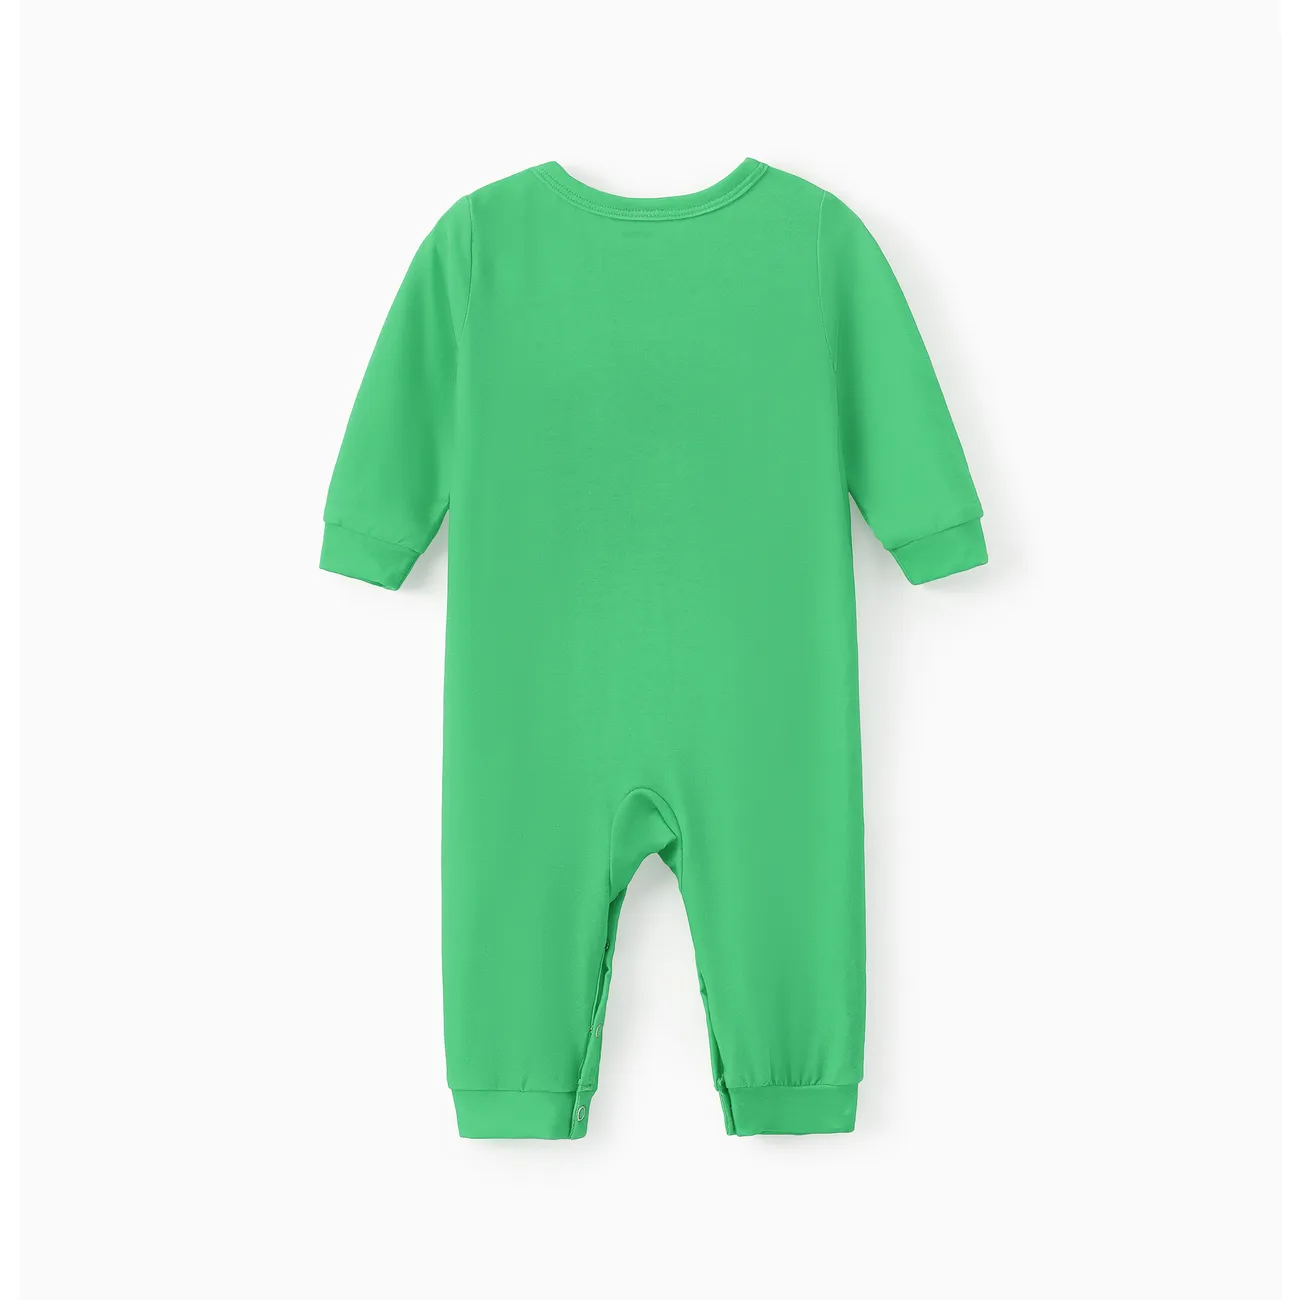 Baby Jungen Kindlich Langärmelig Baby-Overalls grün big image 1